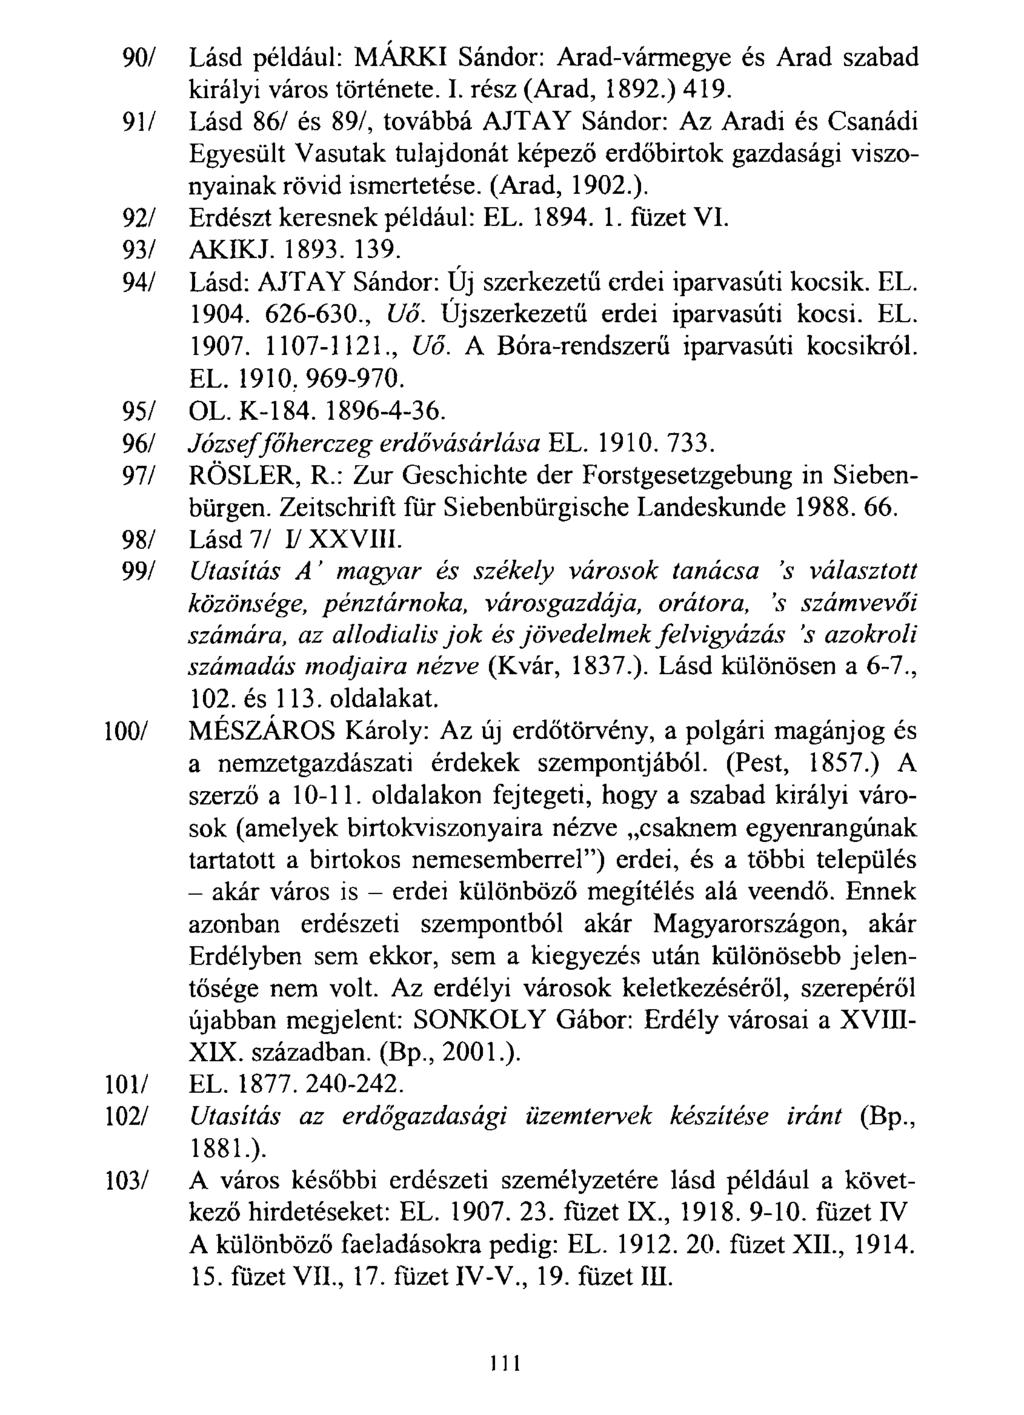 90/ Lásd például: MARKI Sándor: Arad-vármegye és Arad szabad királyi város története. I. rész (Arad, 1892.) 419.